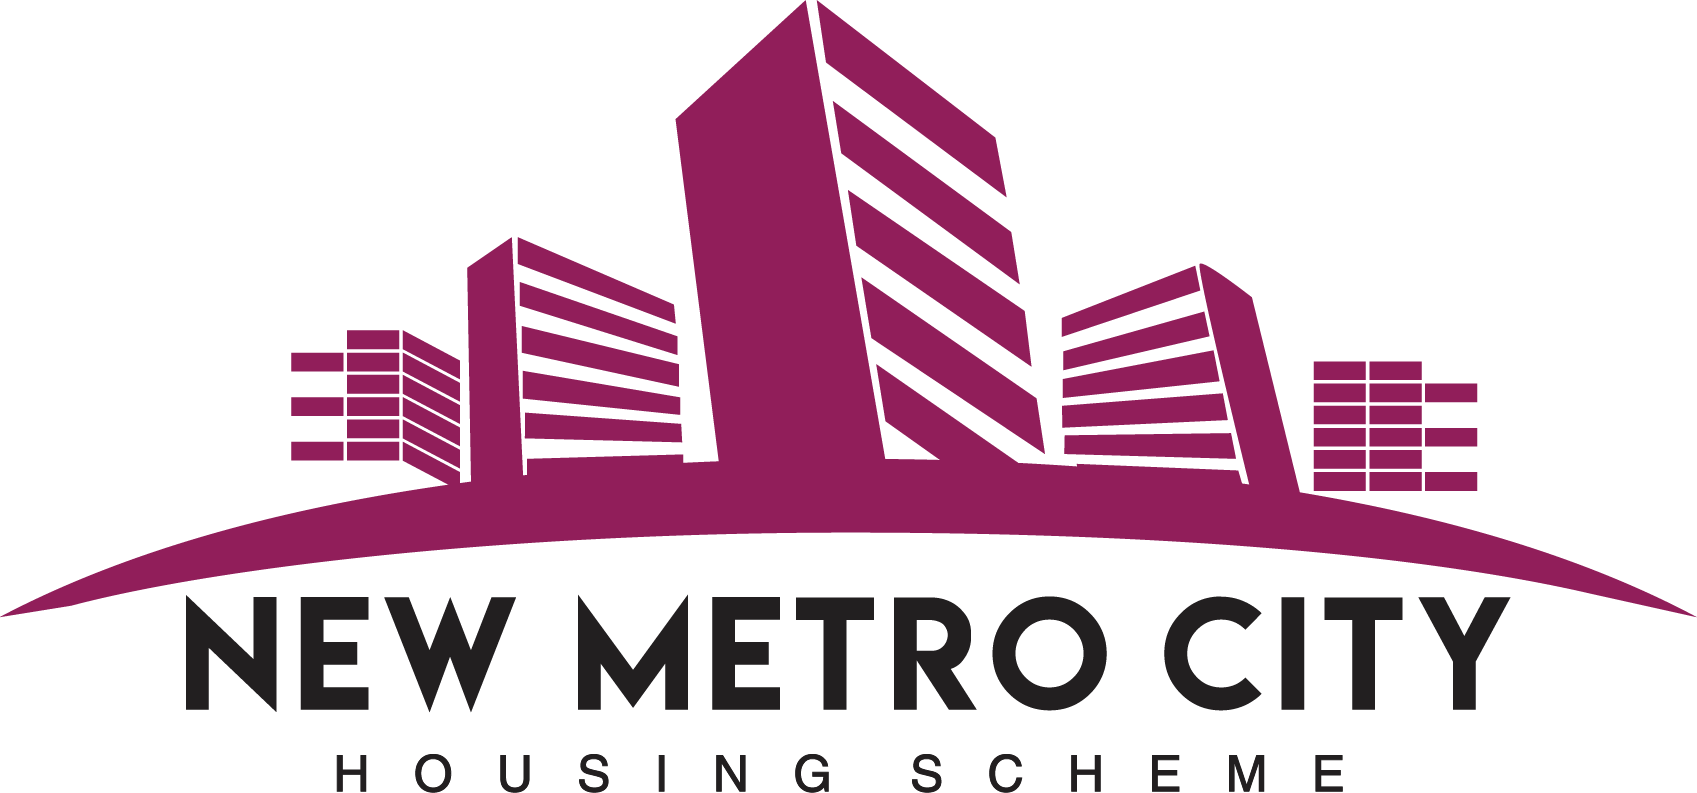 Metro life city. Логотип Сити. Metro City. New City лого. СЭЛТ Сити логотип.